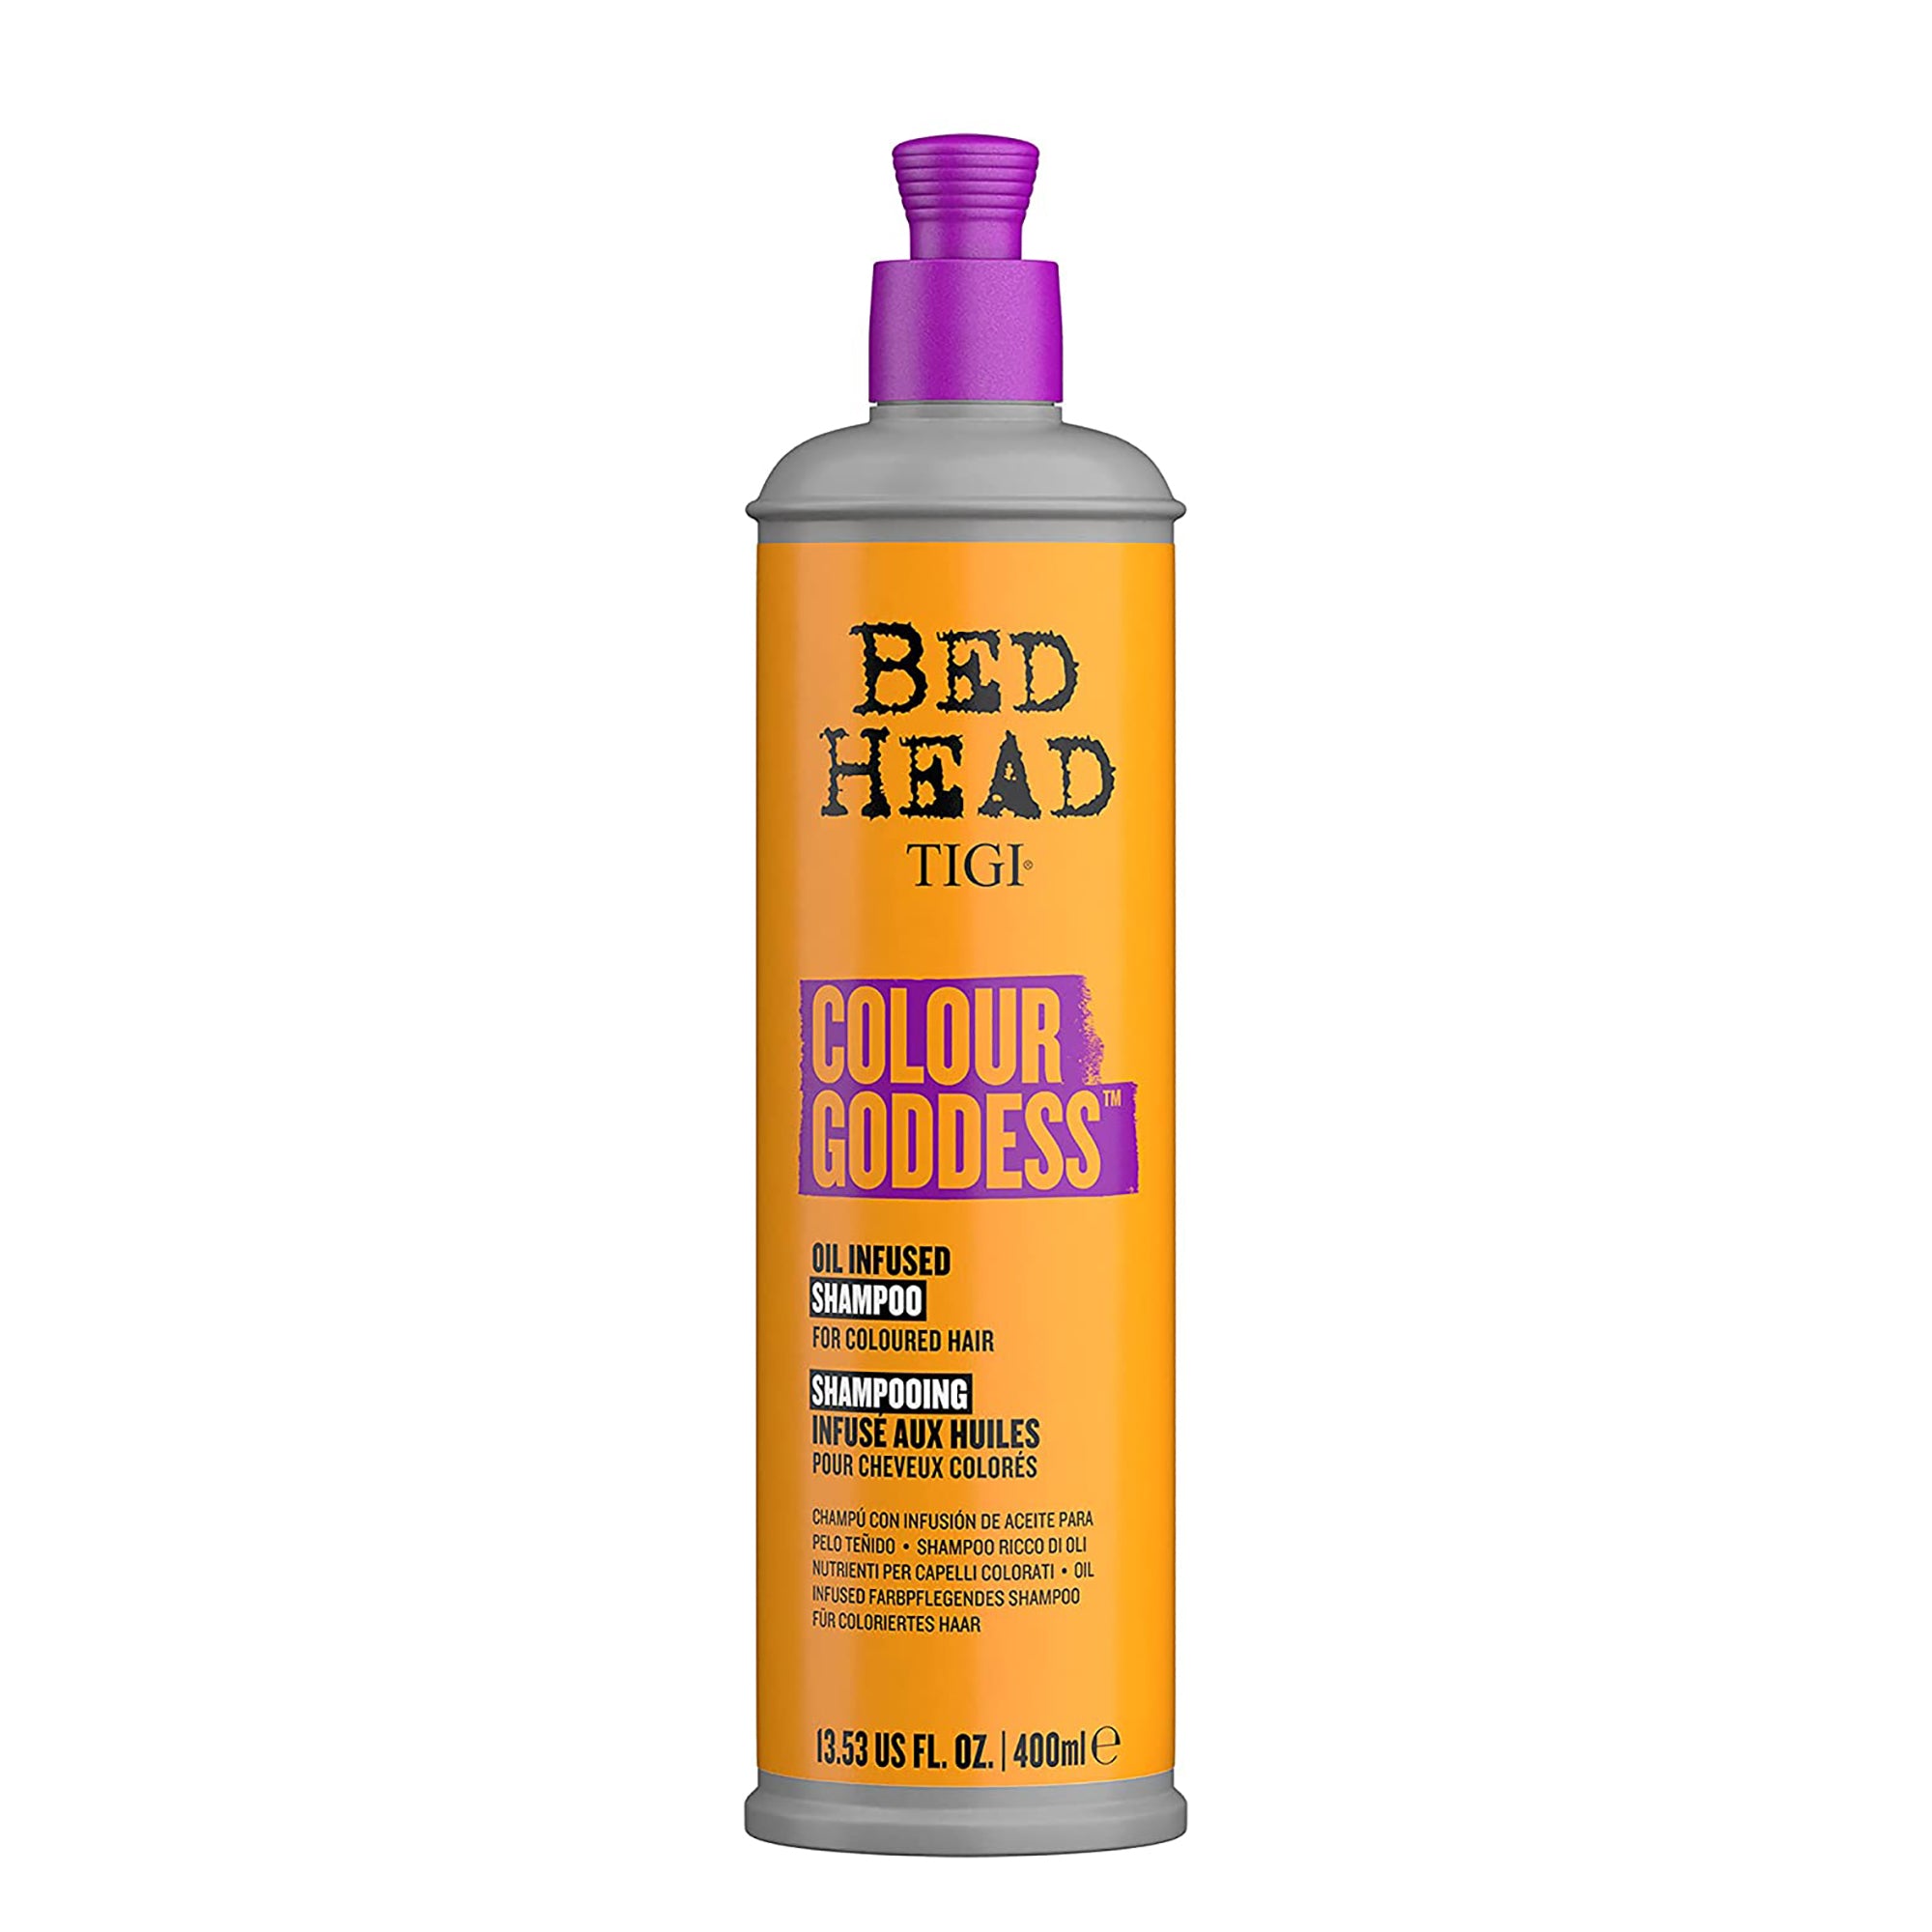 TIGI Bed Head Colour Goddess Oil Infused Shampoo / 13.5 OZ